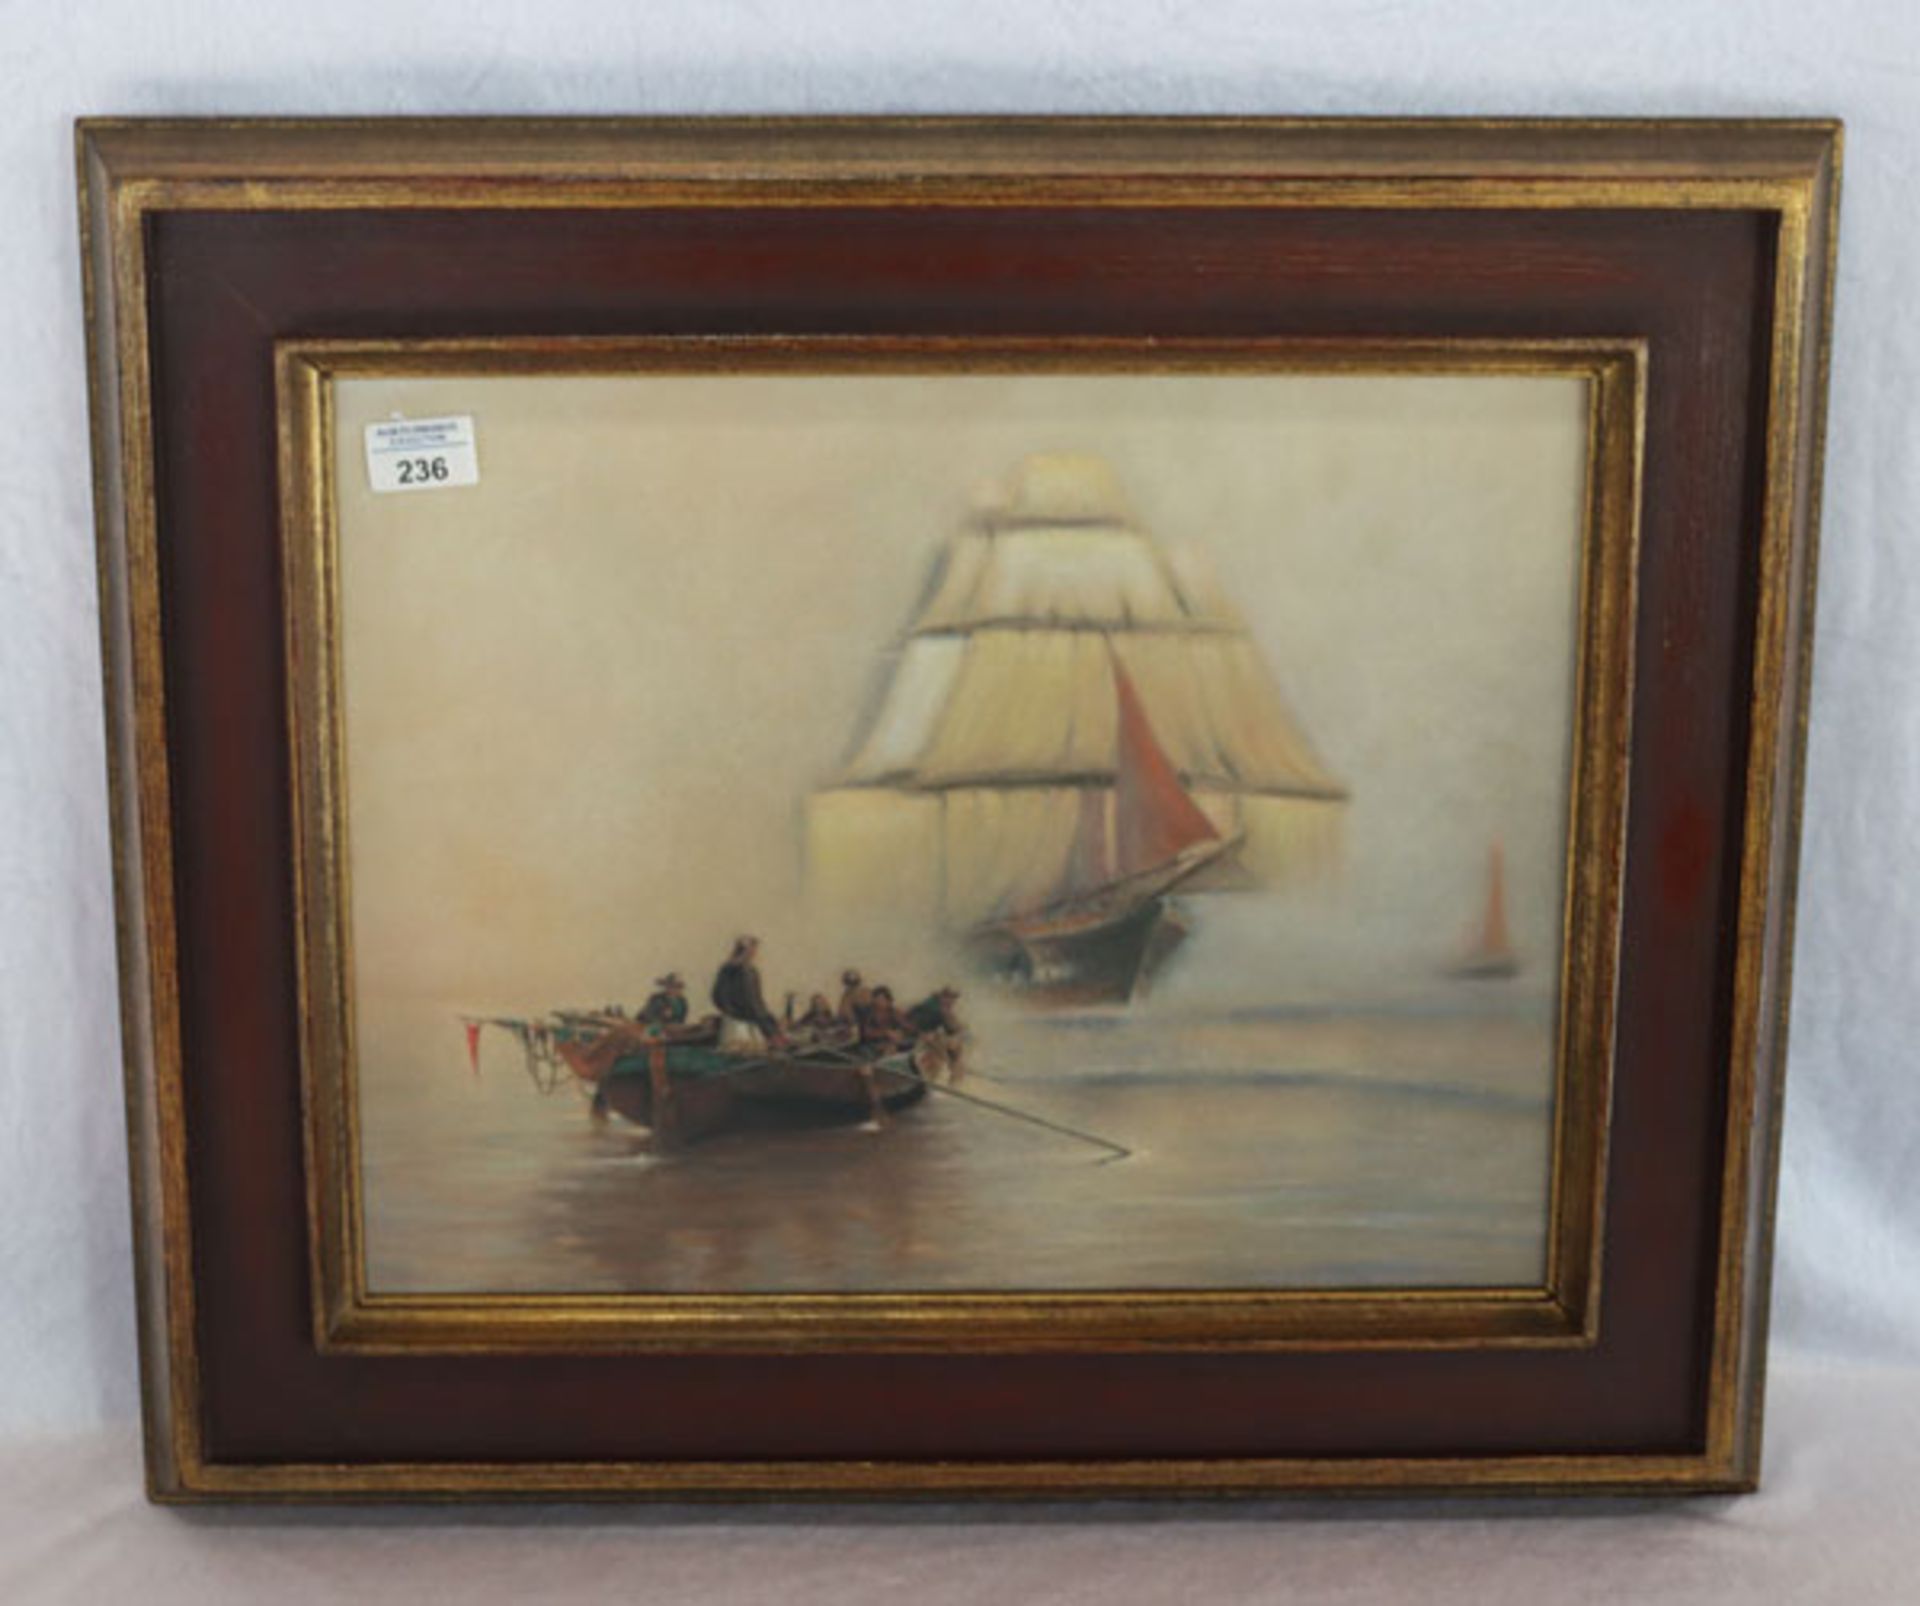 Kunstdruck 'Schiff-Szenerie', unter Glas gerahmt, Rahmen leicht bestossen, incl. Rahmen 52 cm x 62